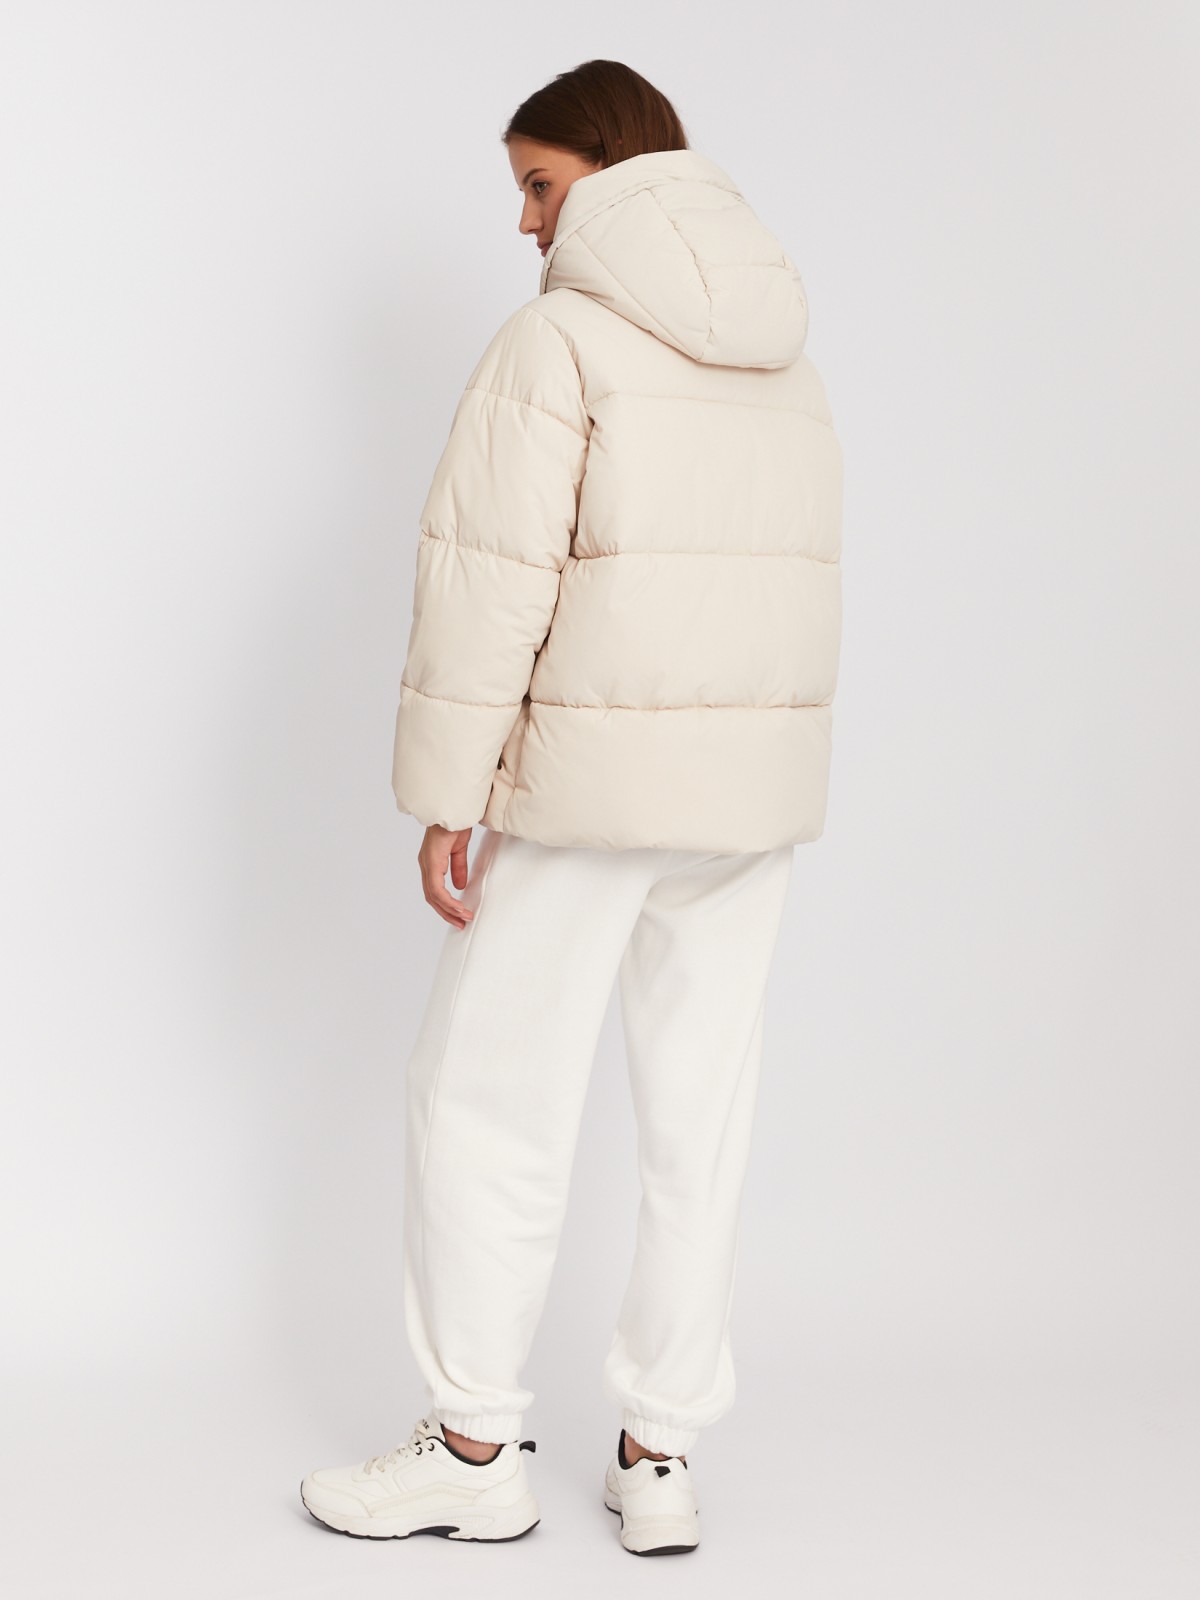 Тёплая дутая стёганая куртка с капюшоном и двойным воротником zolla 023345112104, цвет молоко, размер XS - фото 6